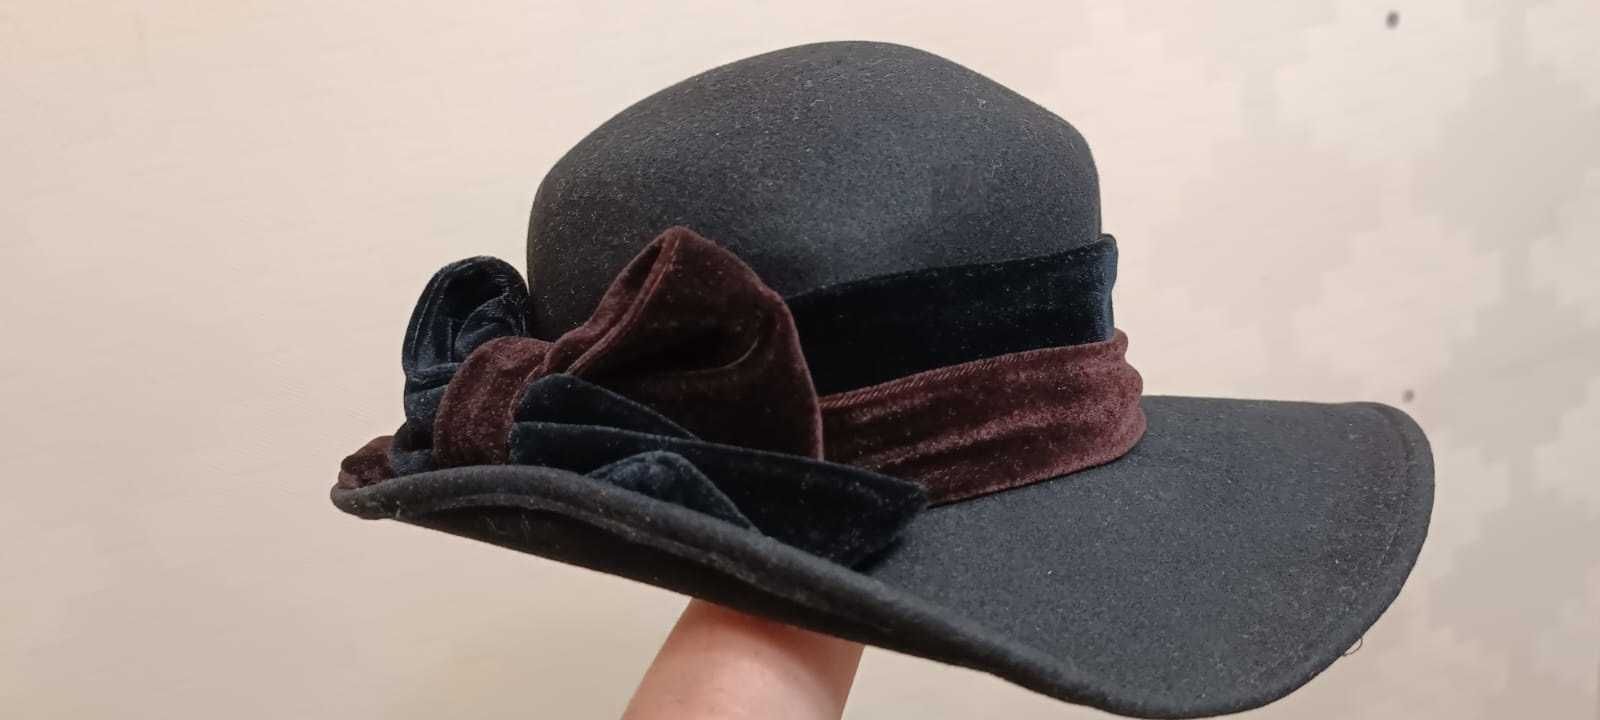 Шляпа черная фетровая элегантная, пуховик, мужские шапки